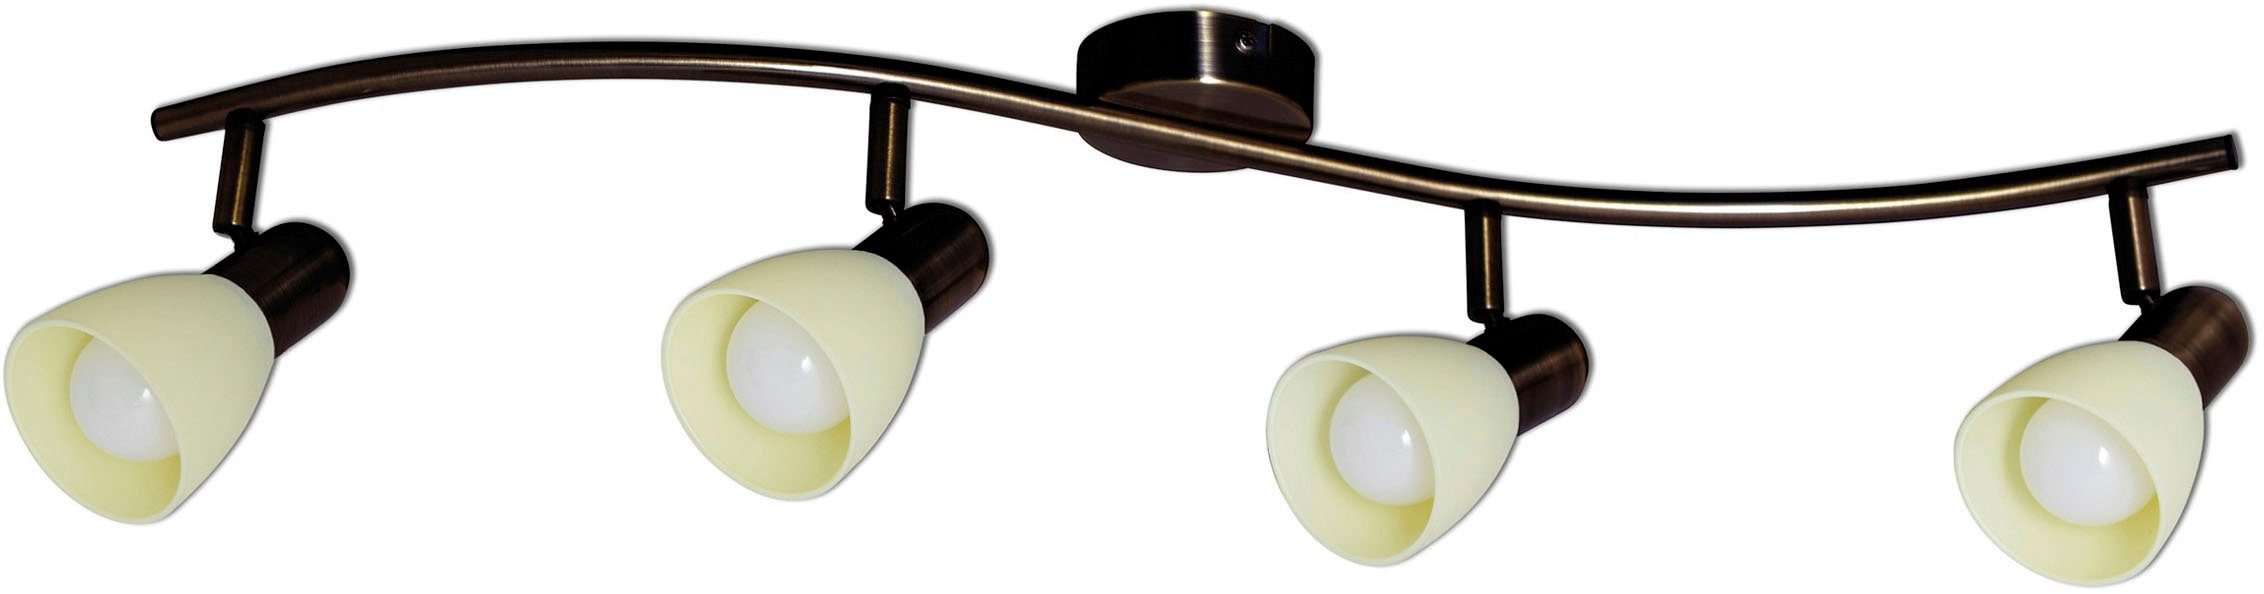 Deckenspot, LED LED Wand-u. LED Mestre, 4er wechselbar, Glasschirm weiß Deckenspot E14, näve braun, Warmweiß,